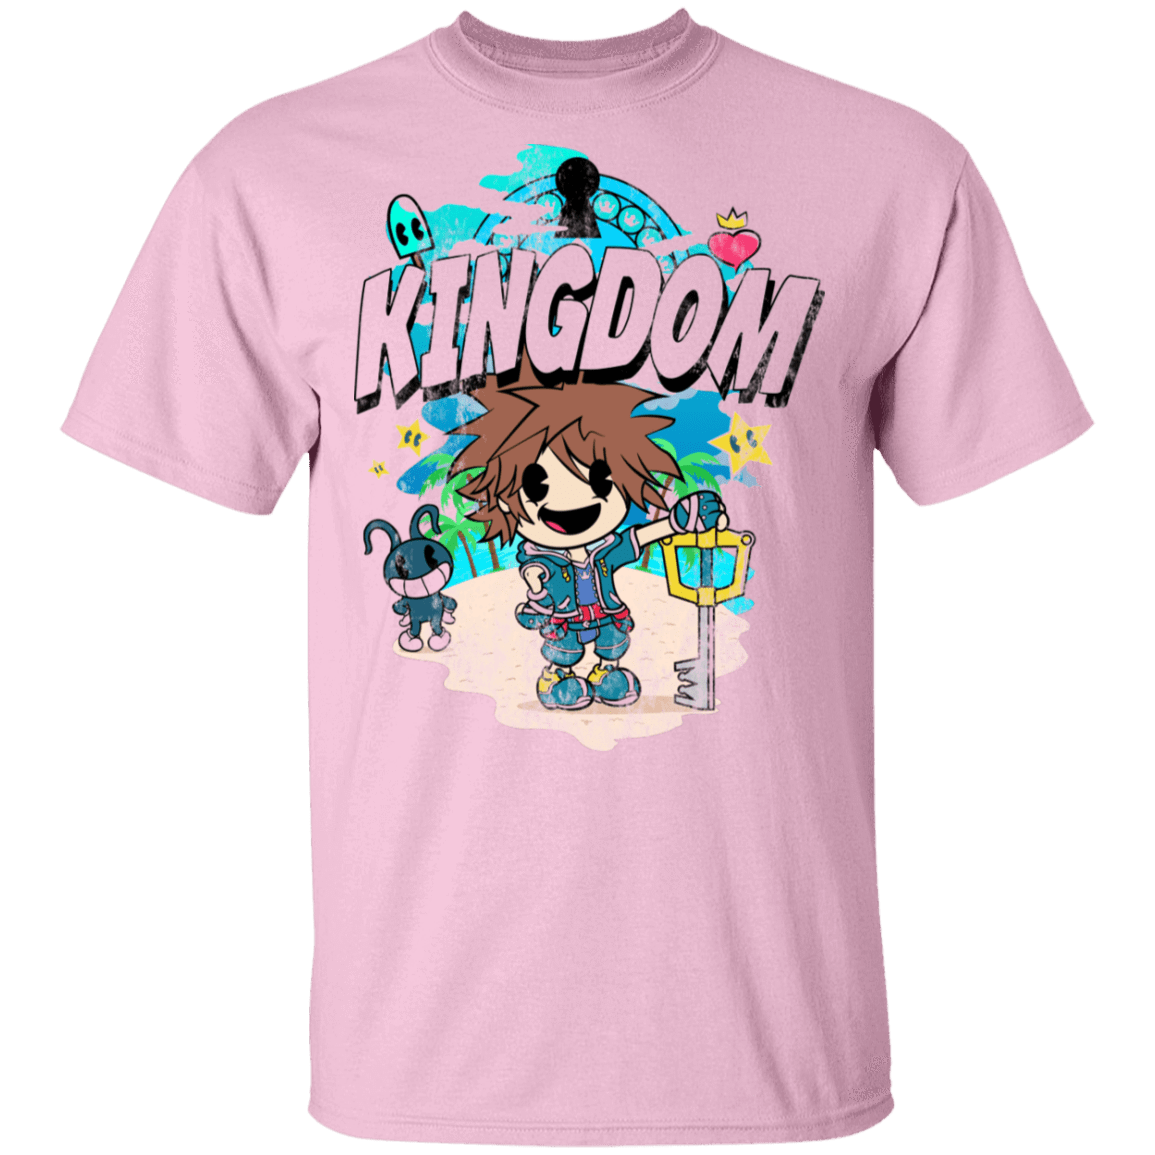 T-Shirts Light Pink / S Kingdom Cartoon T-Shirt